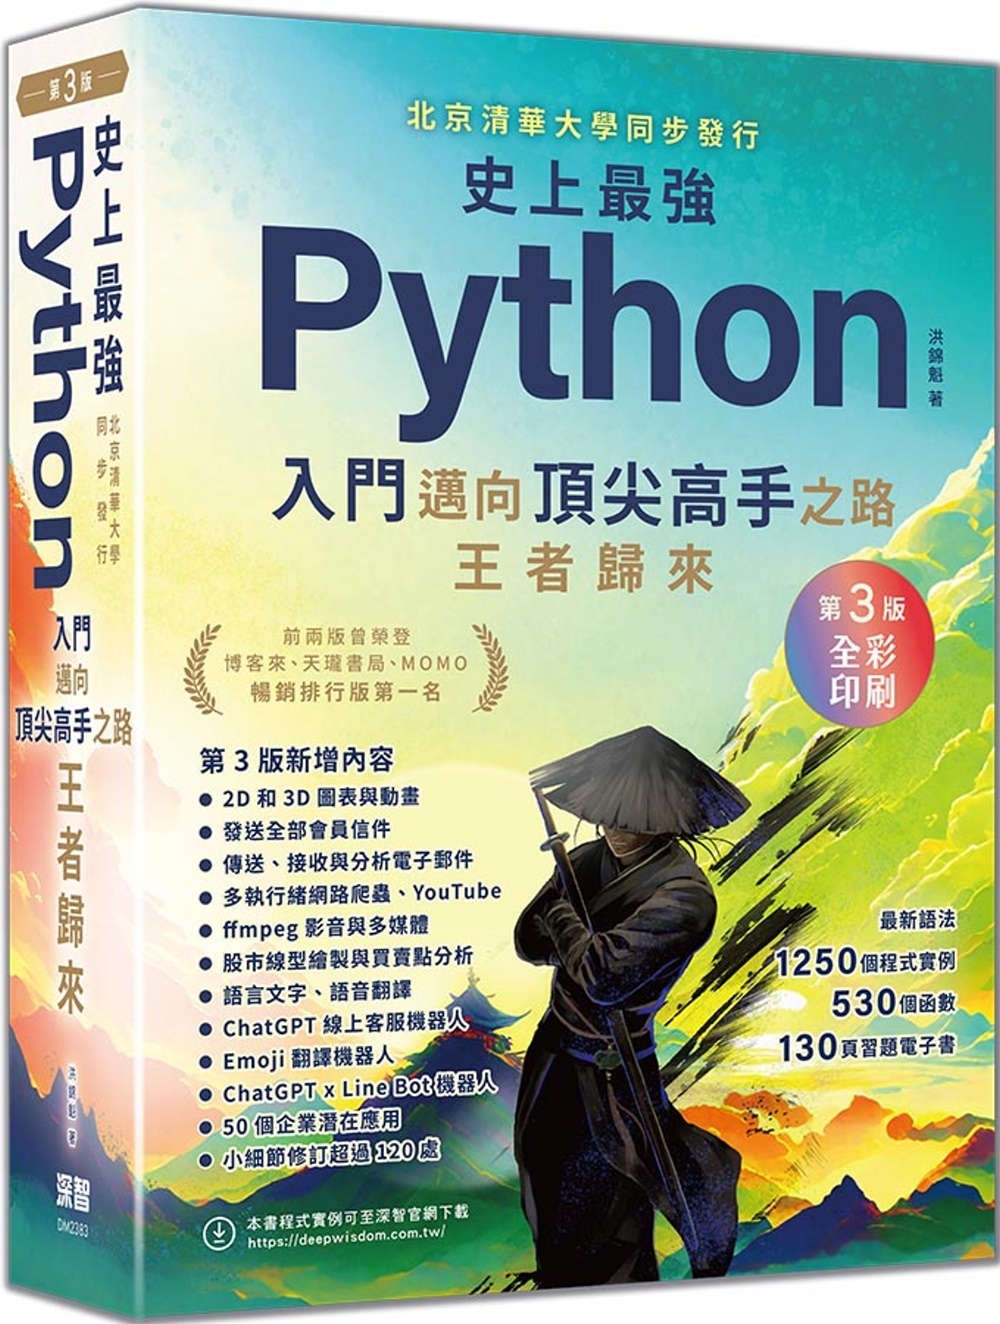 史上最強Python入門邁向頂尖高手之路王者歸來 第3版(燙金彩色印刷紀念版)